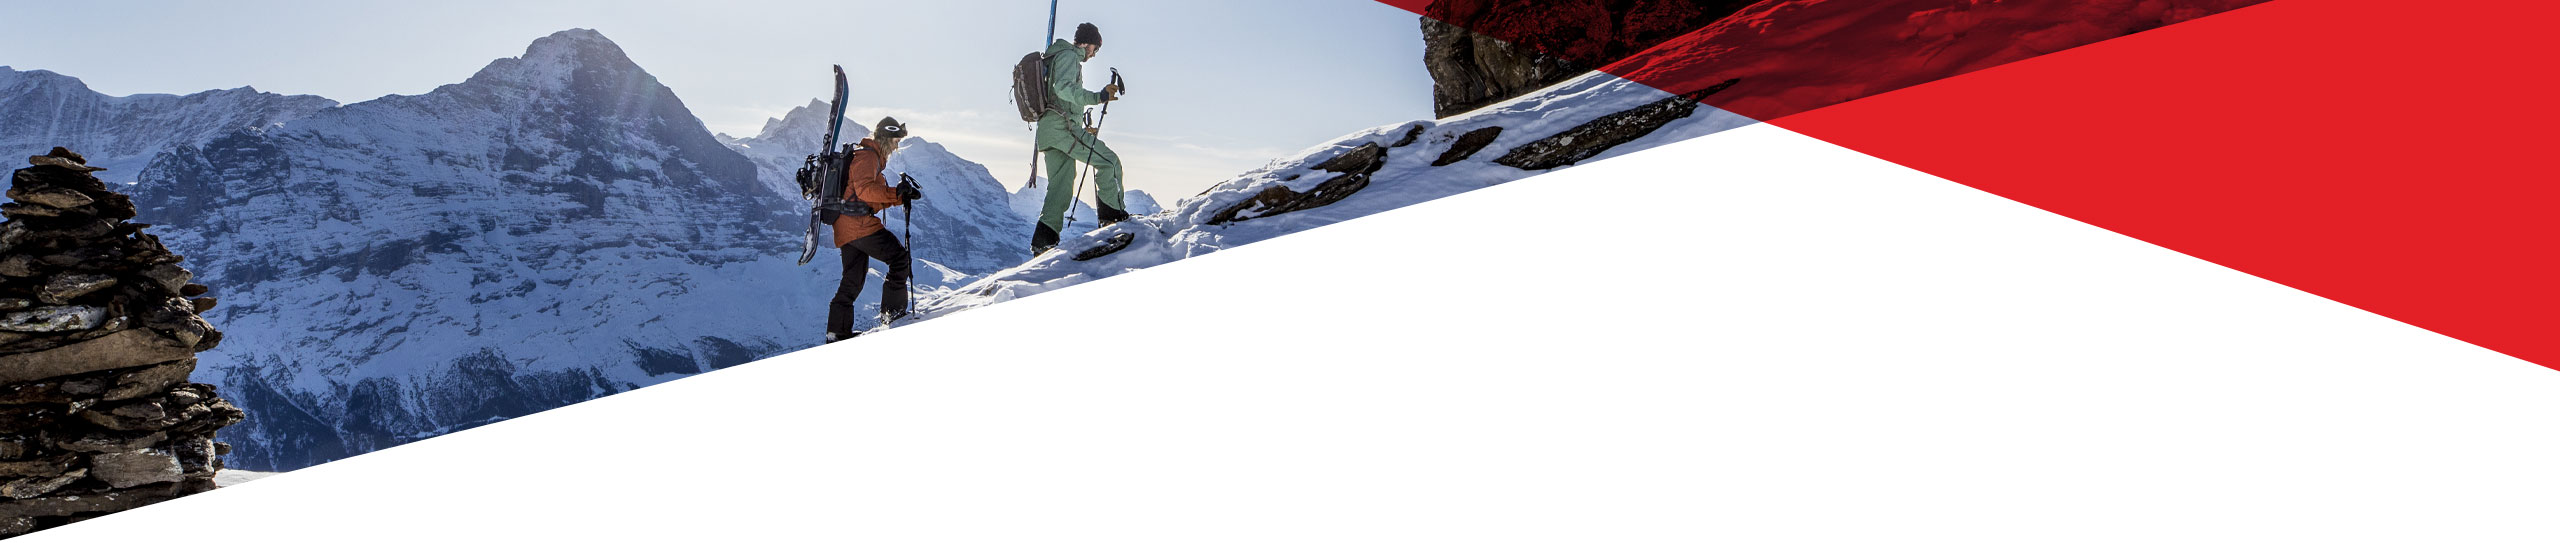 Ski & Snowboardtest Grindelwald